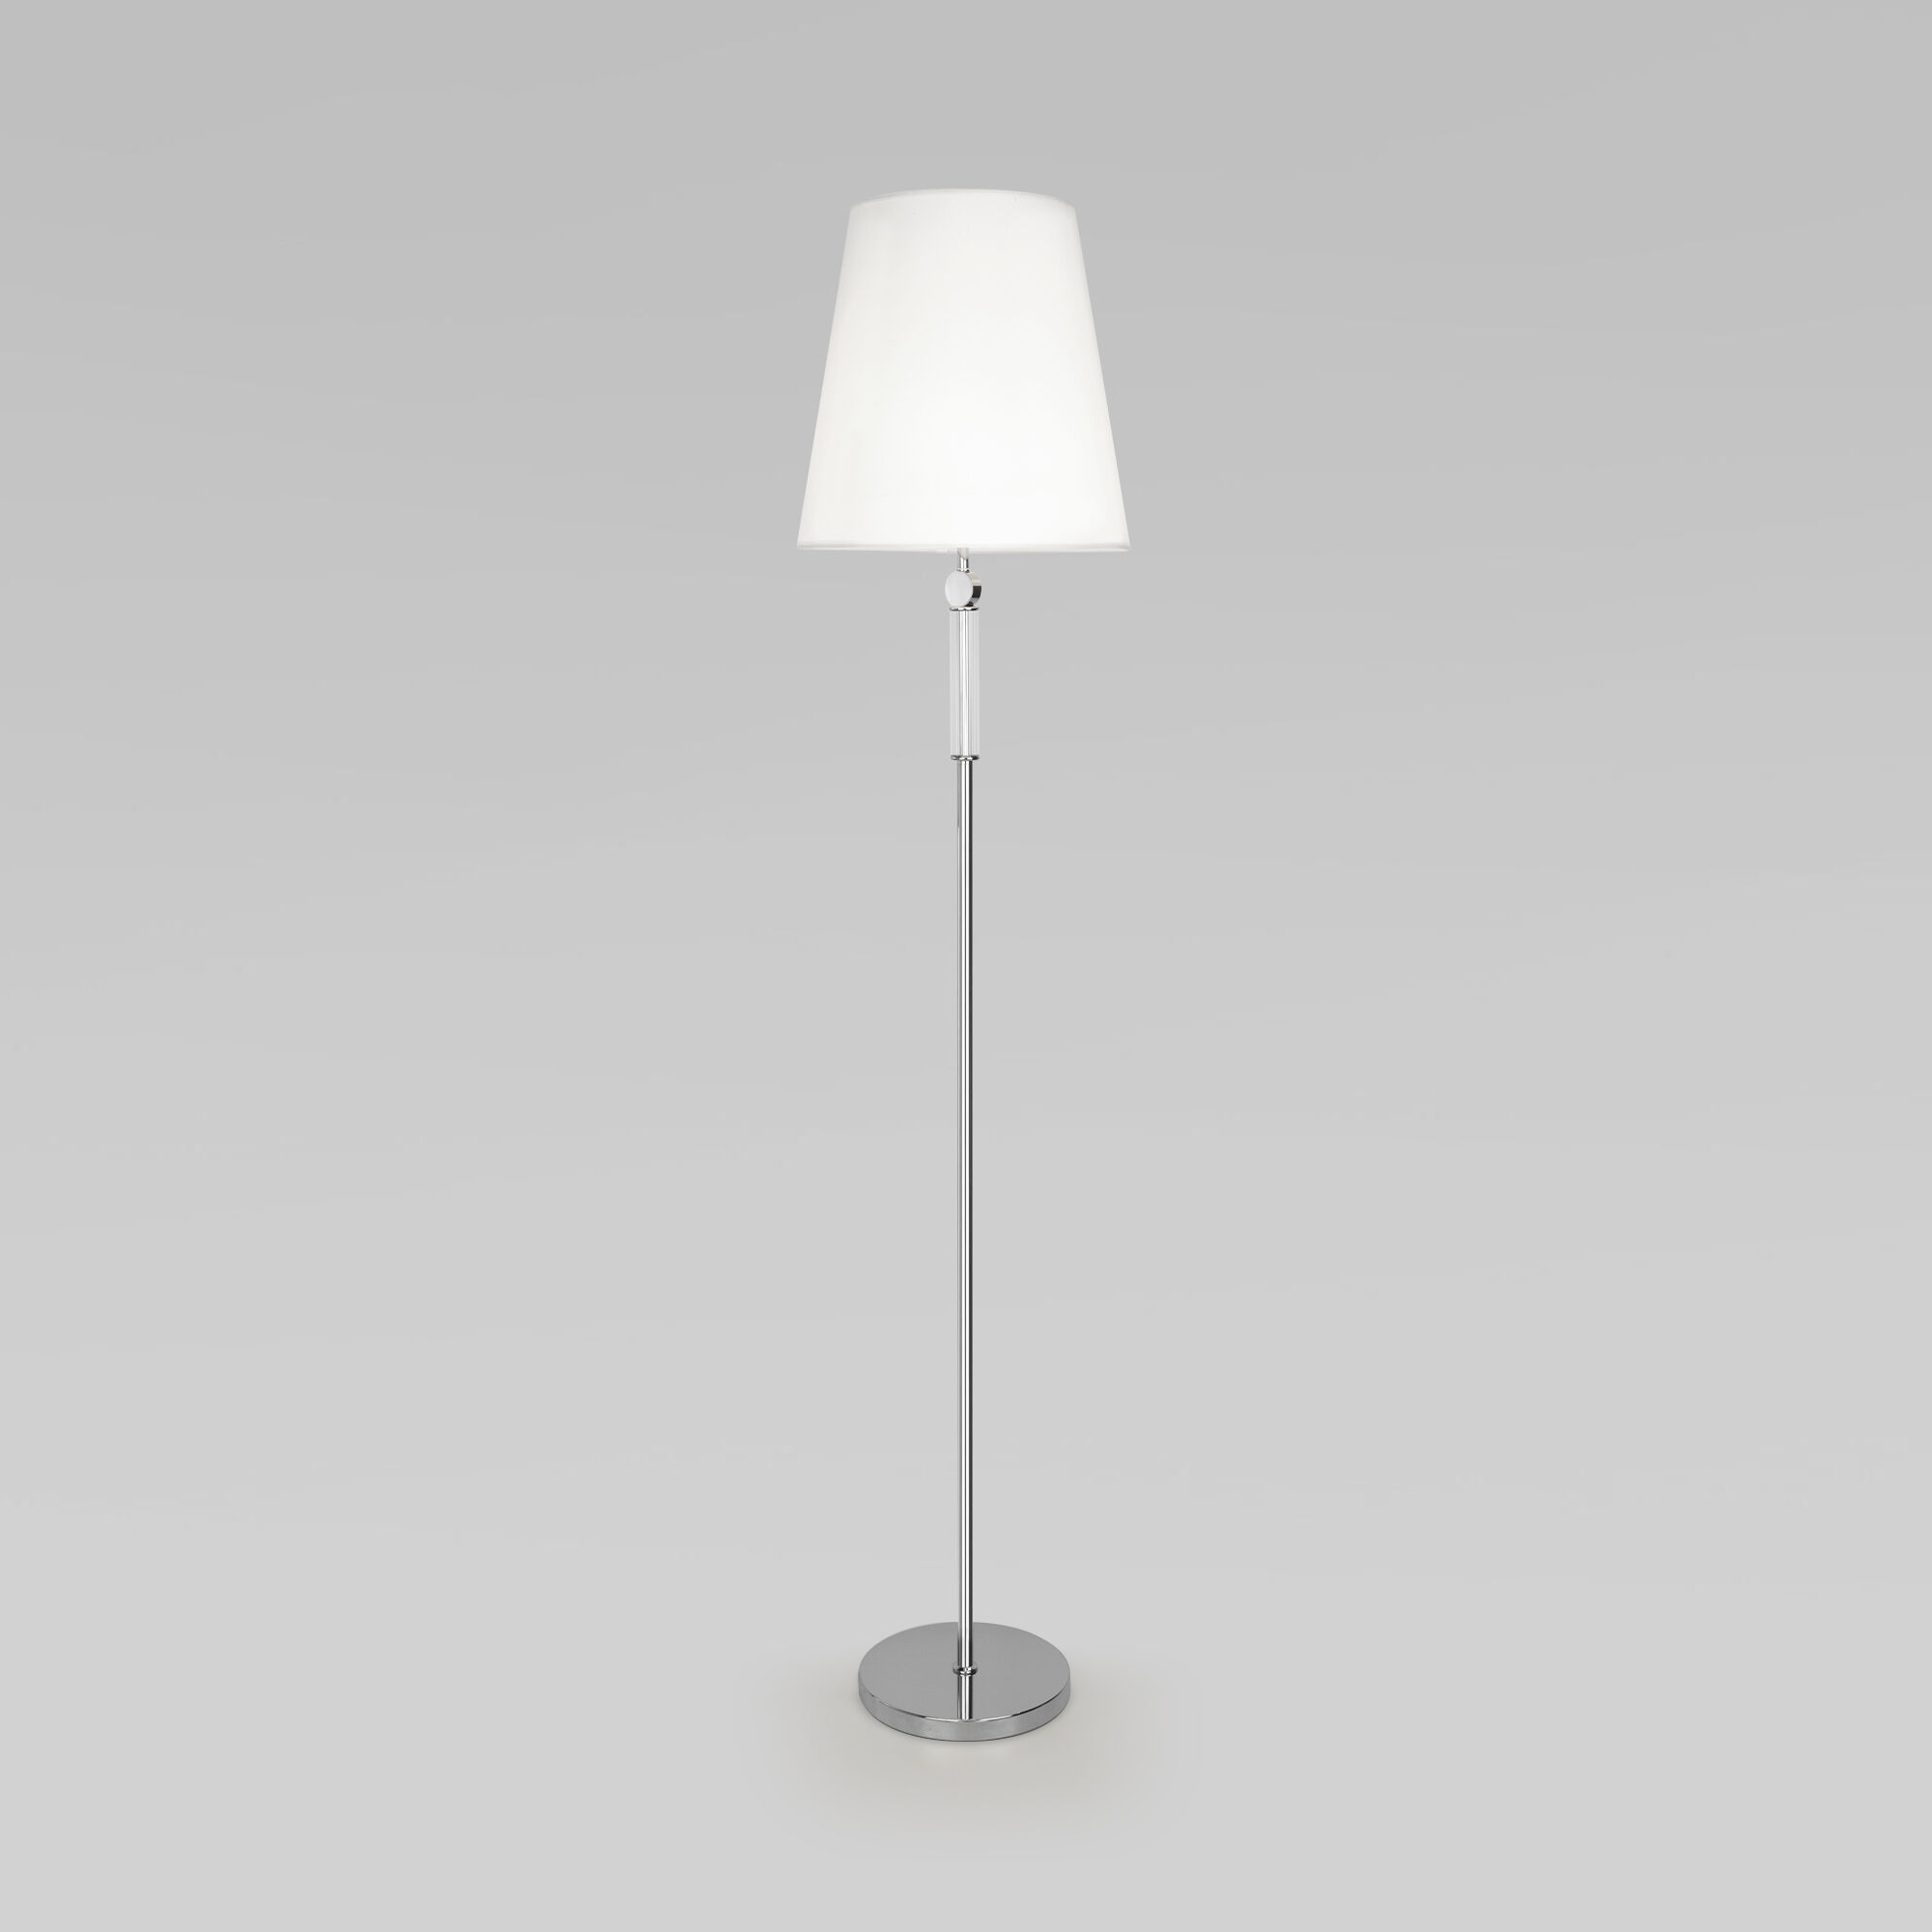 Напольный светильник с тканевым абажуром Eurosvet Conso 01146/1 хром. Фото 1